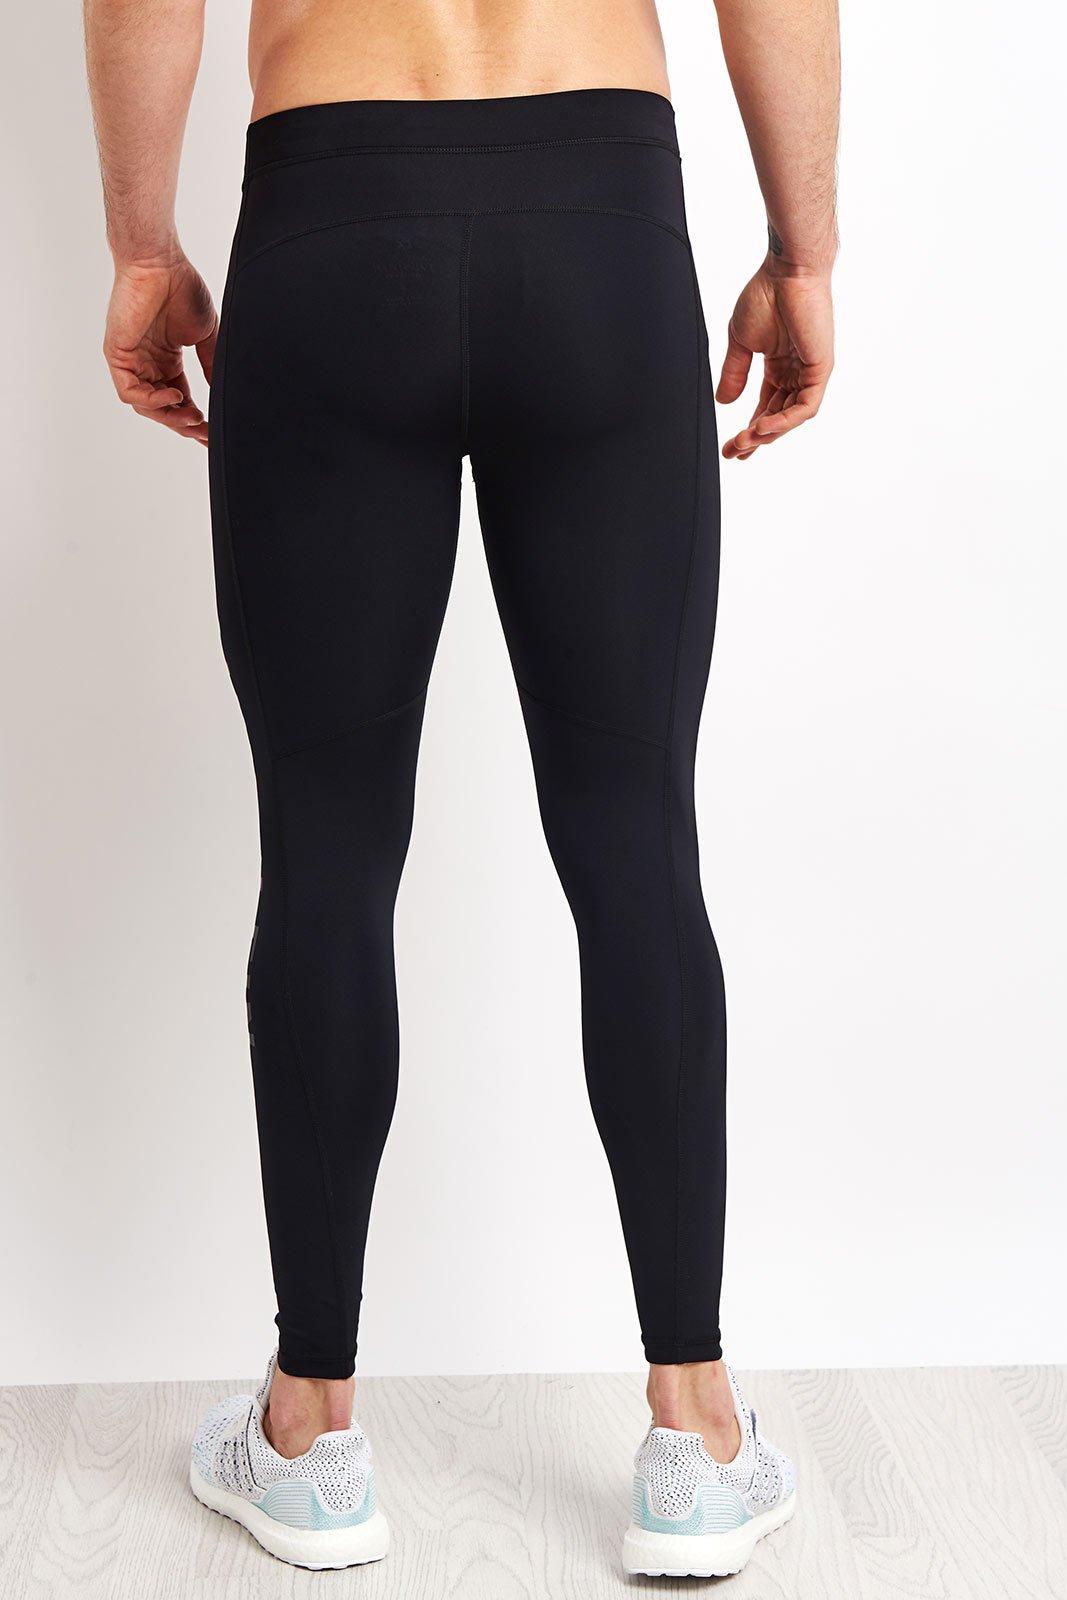 Calvin Klein Full Length Tight Logo Leg in Black for Men - Lyst